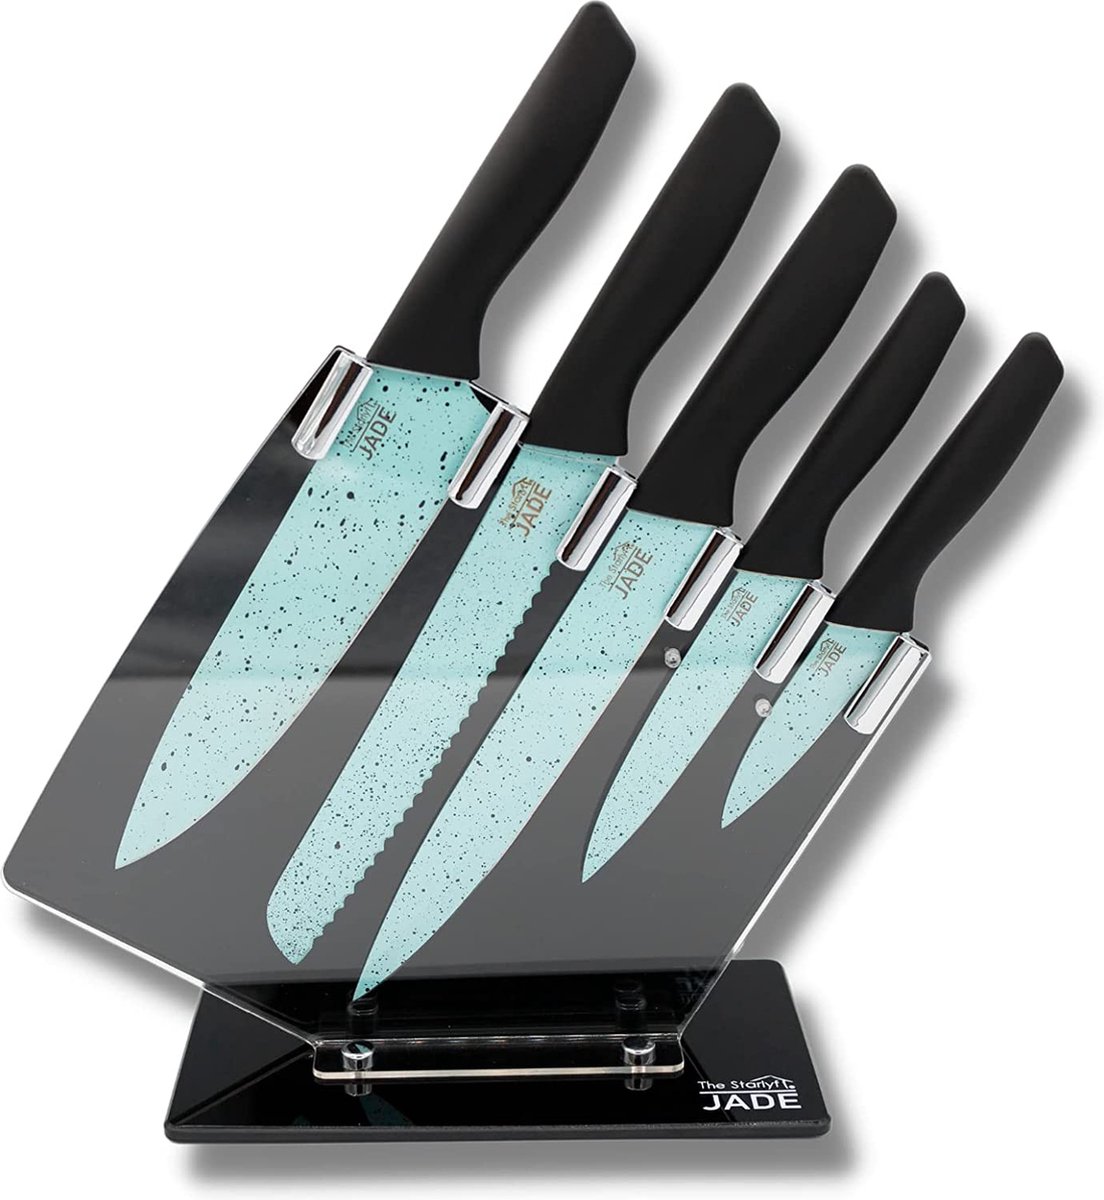 Keukenmessenset JADE Knife Series, 5 Stuks, 1 Acryl Messenhouder, Roestvrijstalen Keukenmes, Superscherp, Ergonomisch Ontwerp, Exclusief